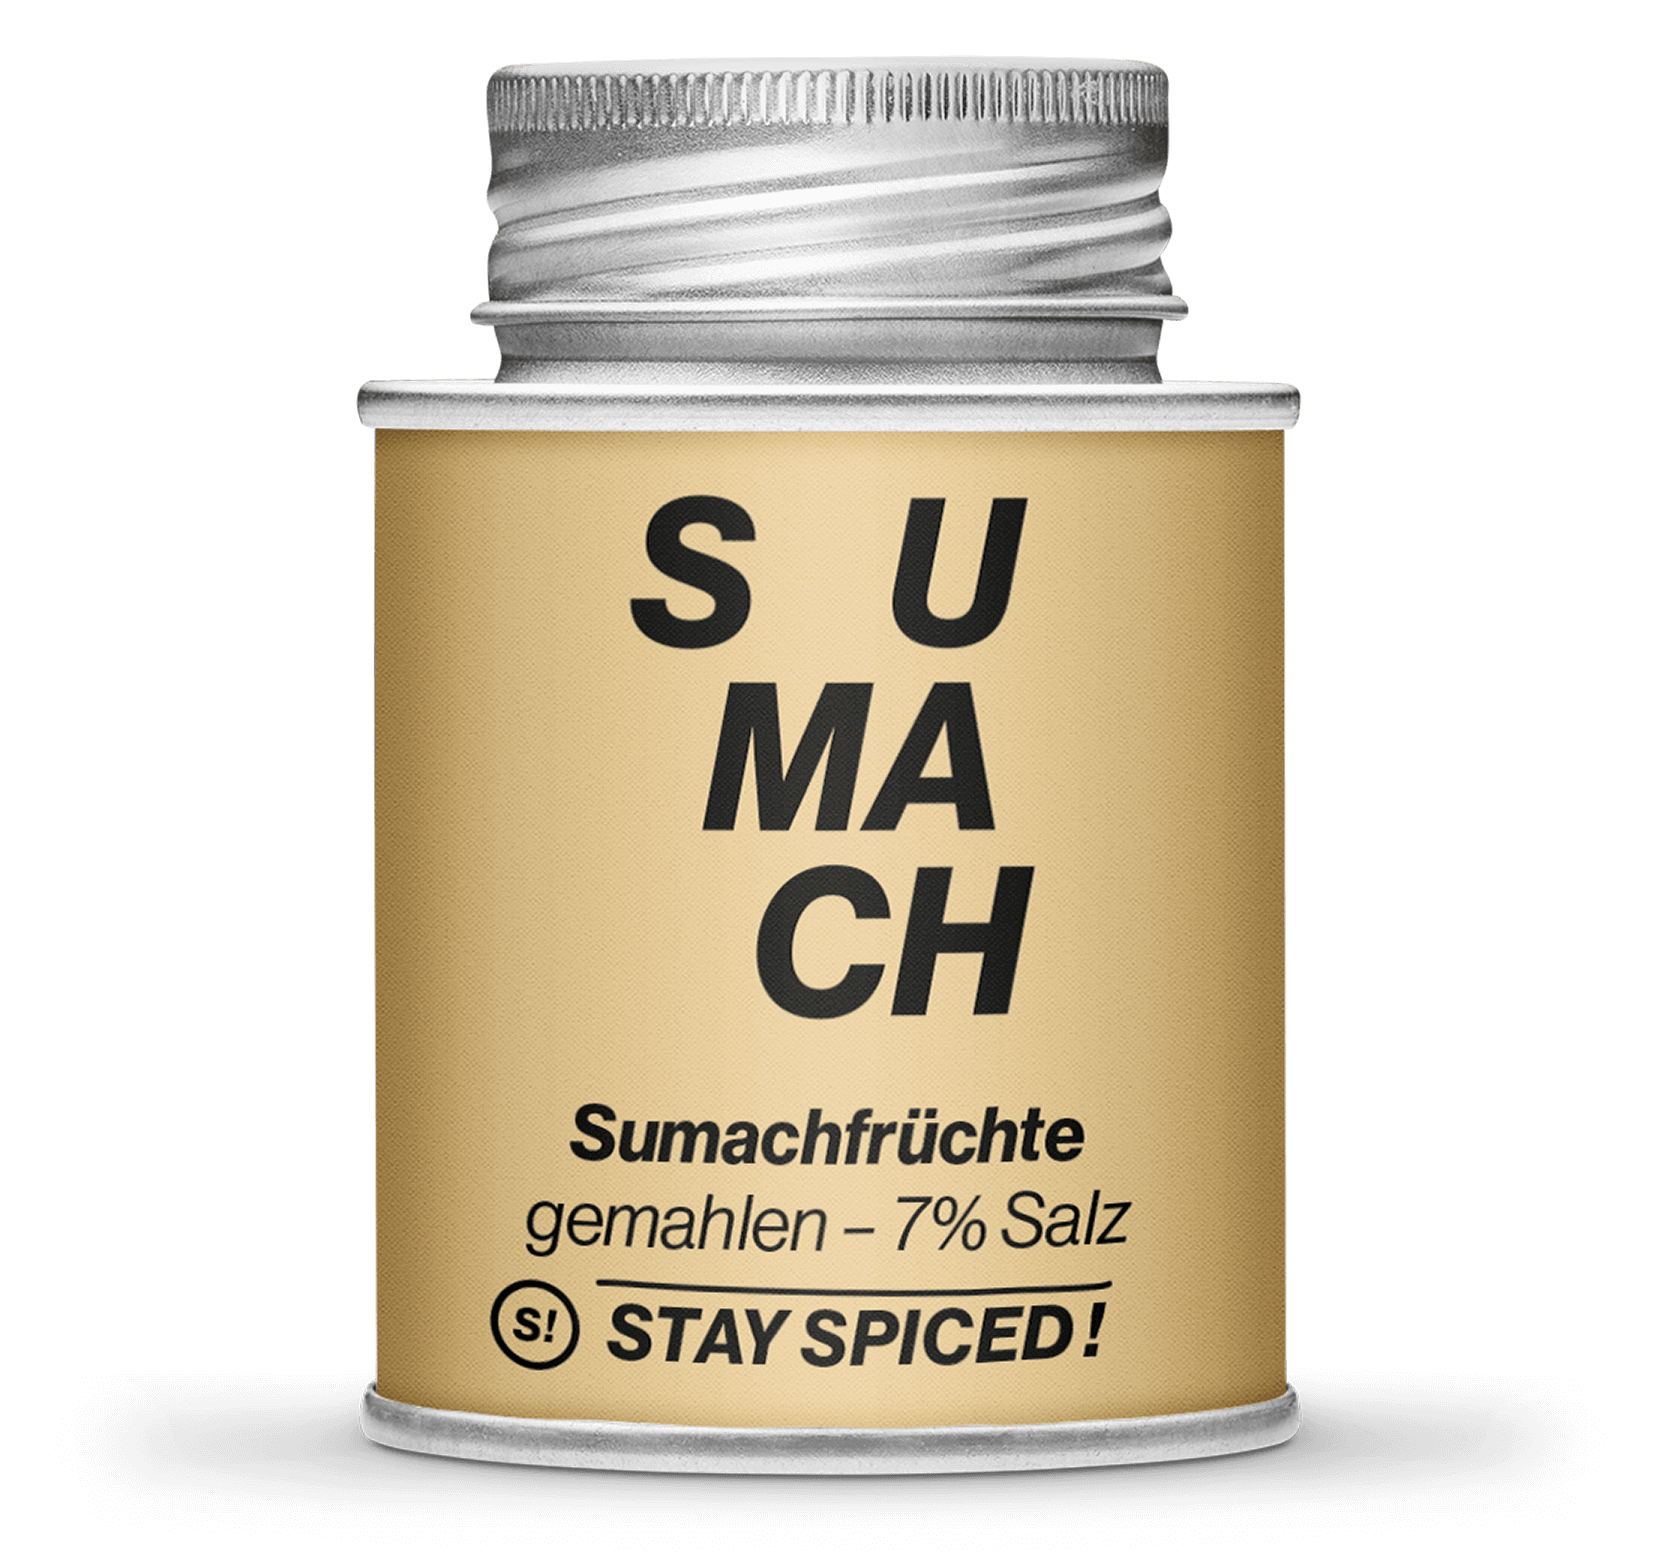 Sumachfrüchte - Sumach Türkisch - 7% Salz